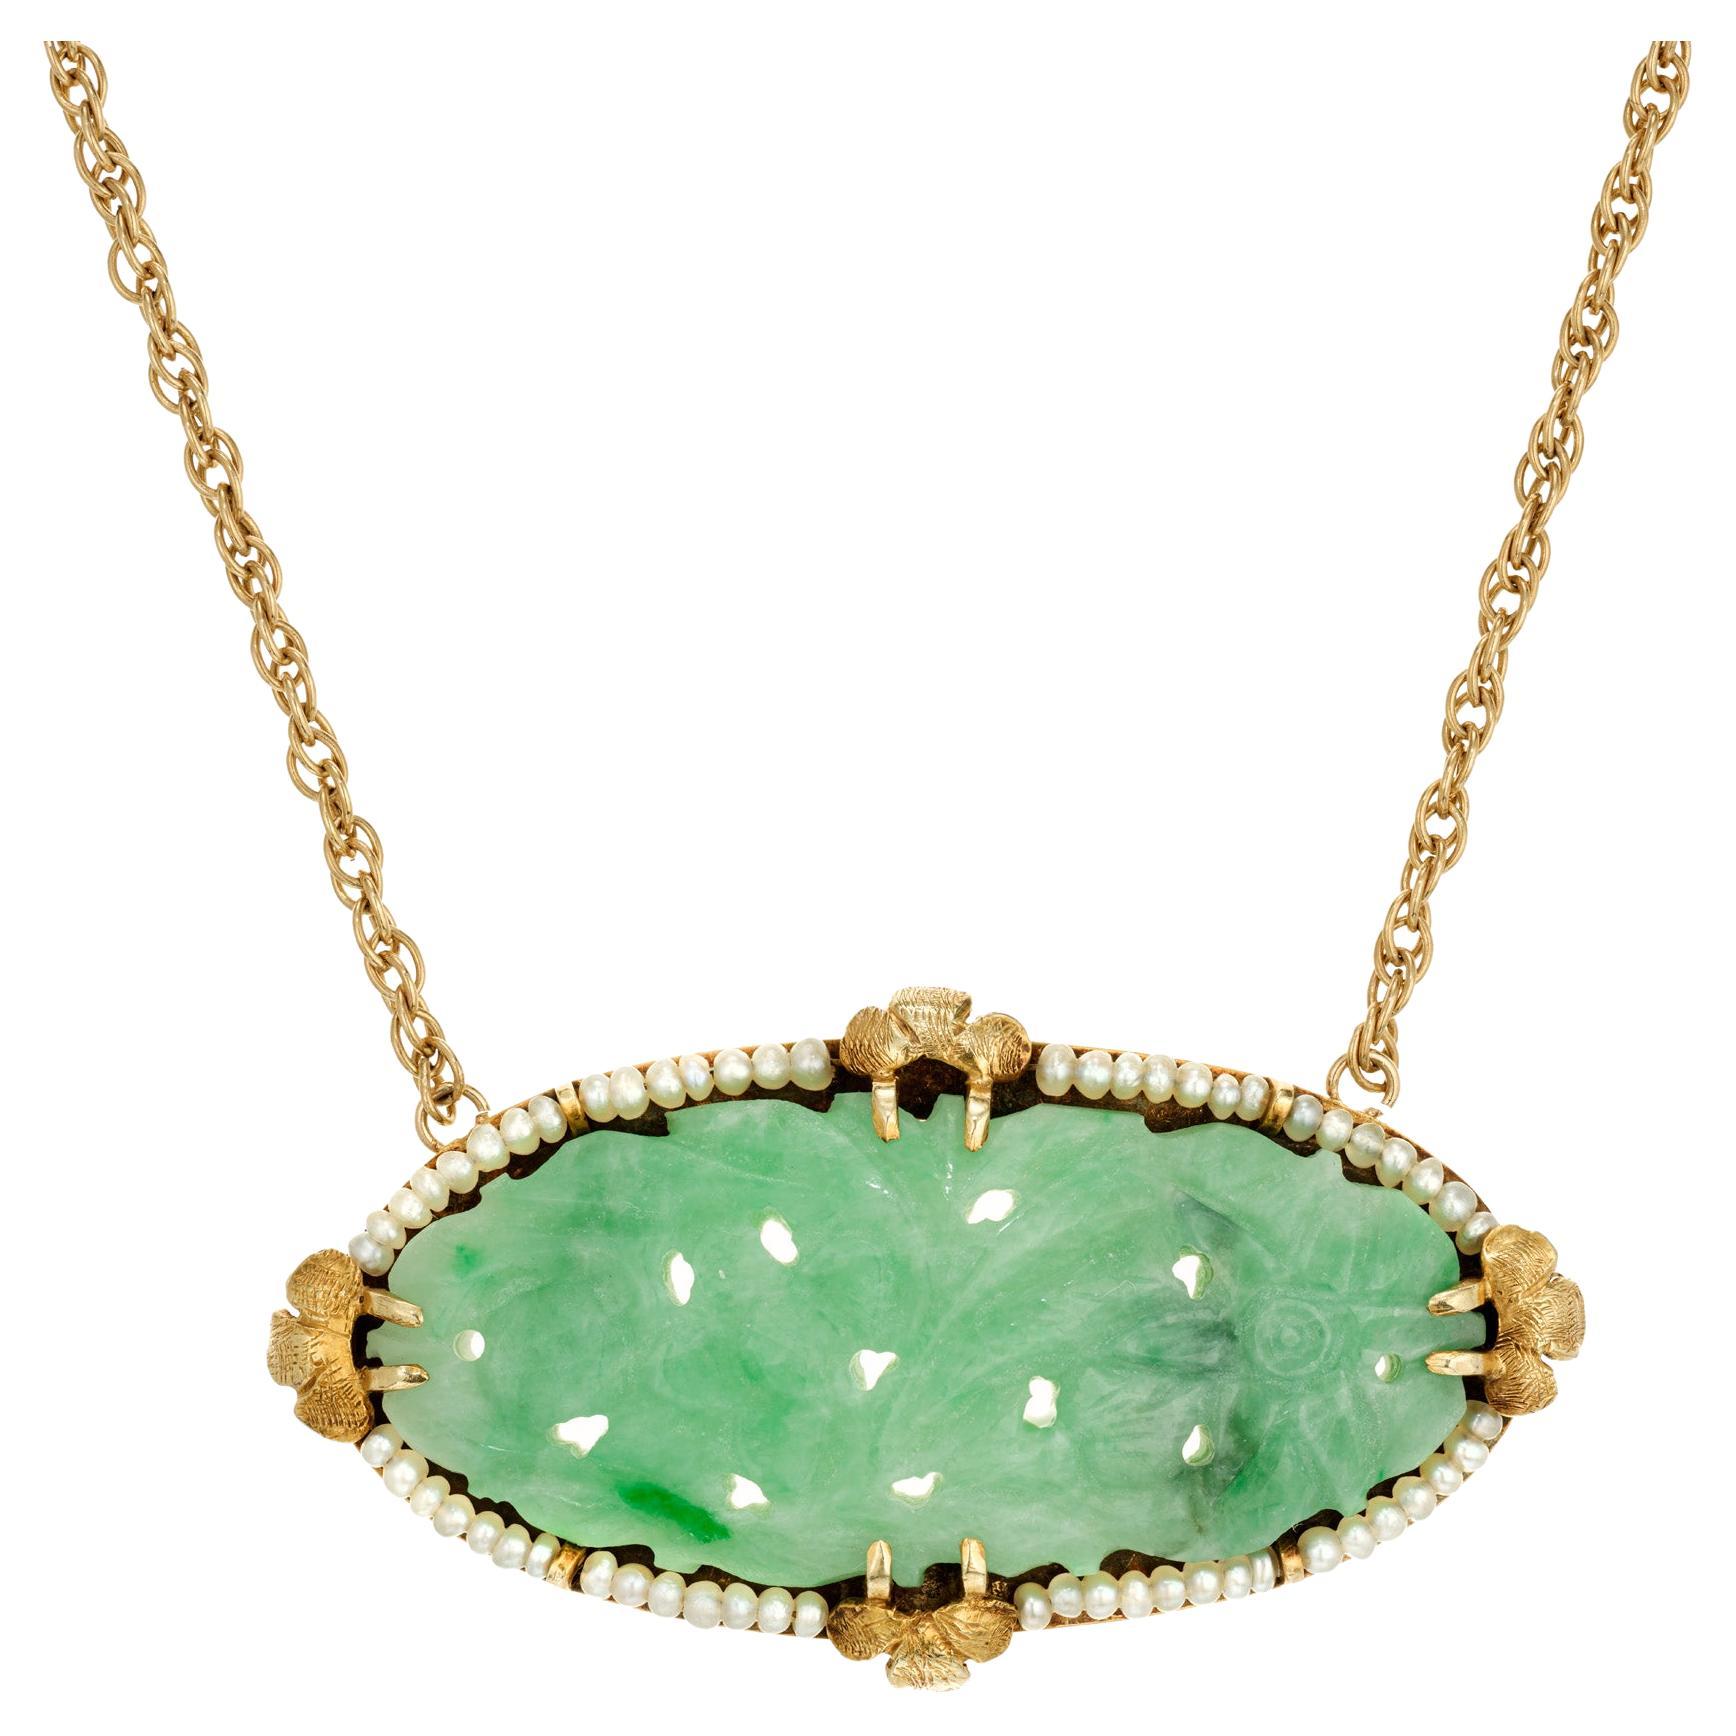 Collier pendentif en or avec jadéite ovale sculptée et perle naturelle en jade